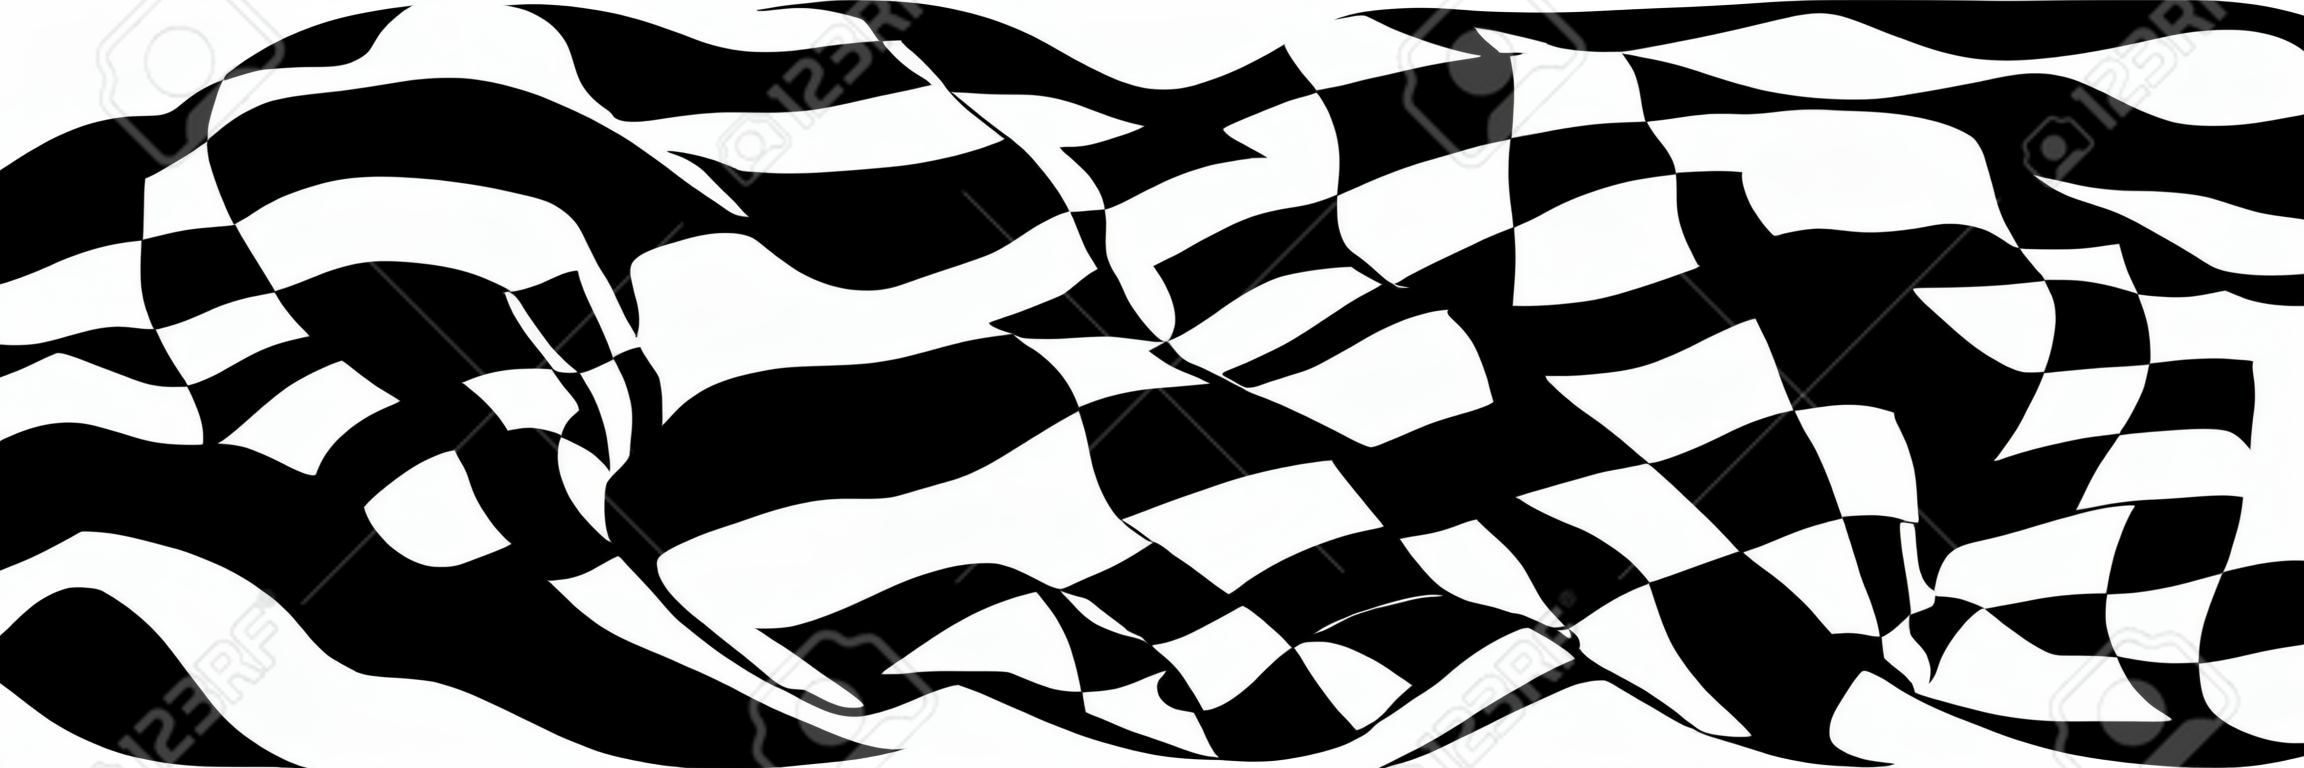 Bandera a cuadros - símbolo de las carreras